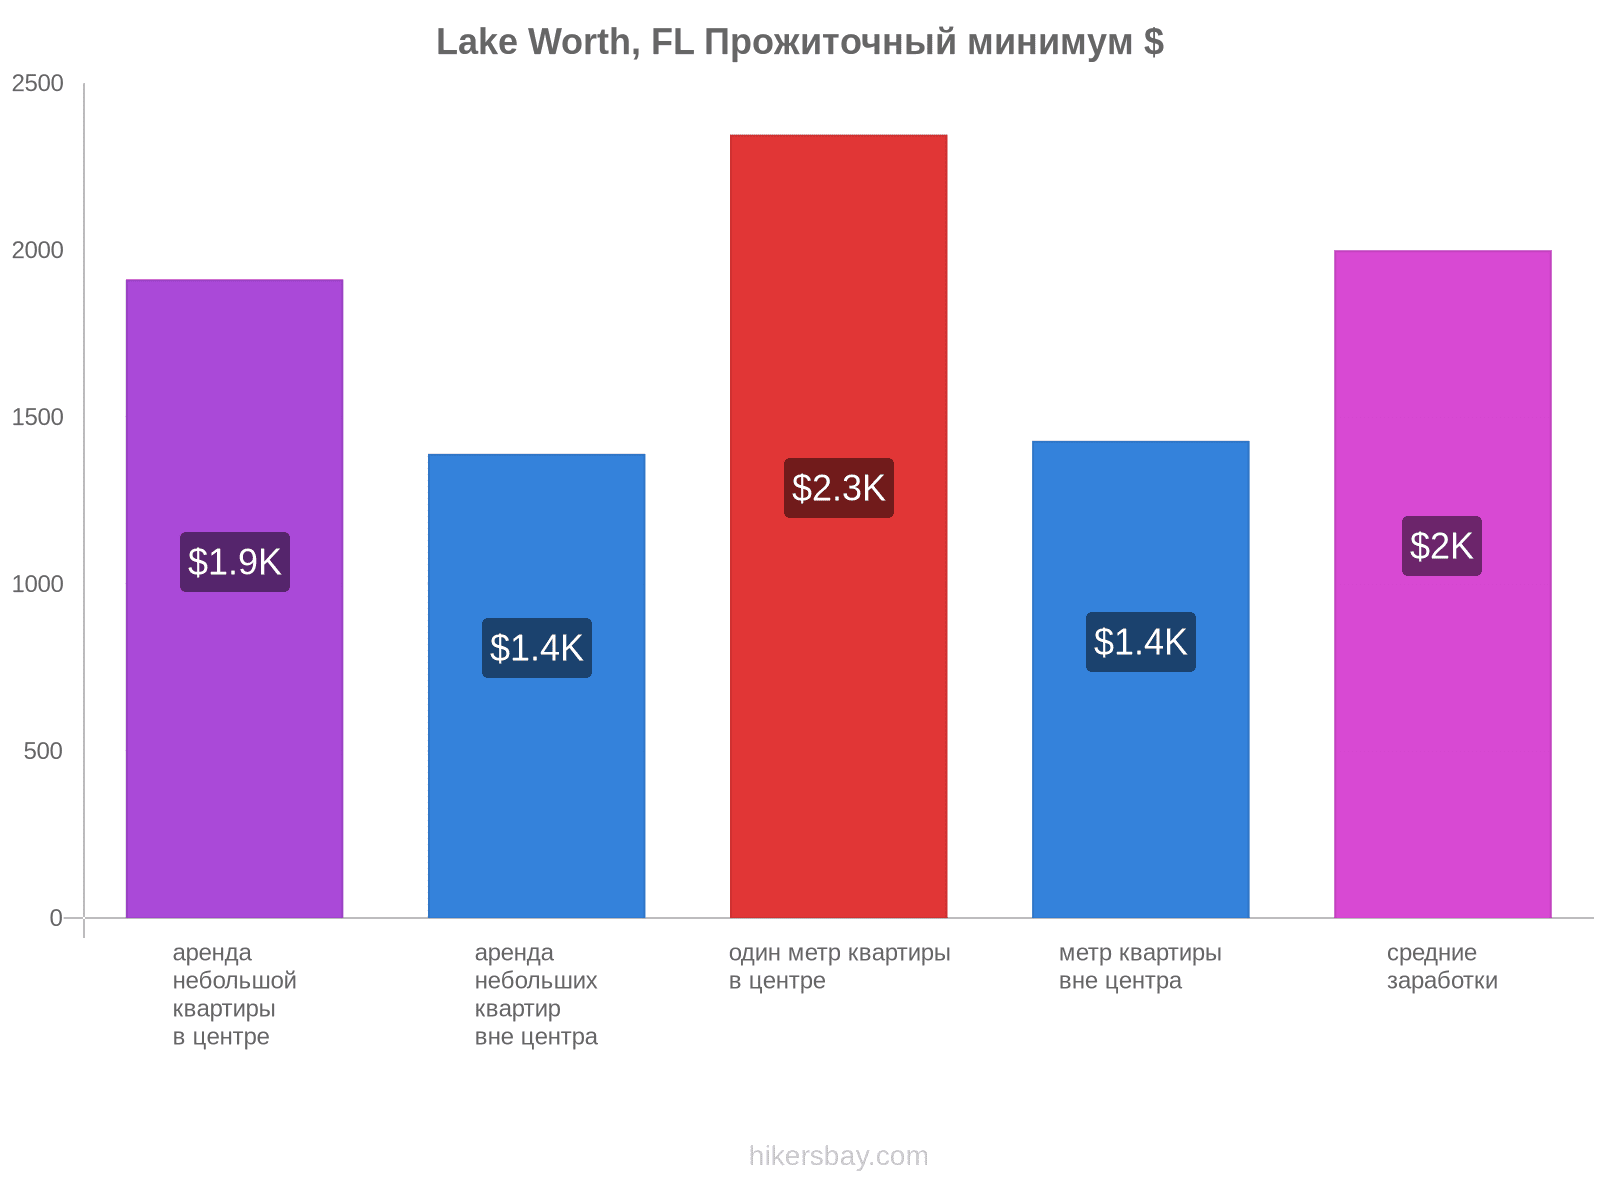 Lake Worth, FL стоимость жизни hikersbay.com